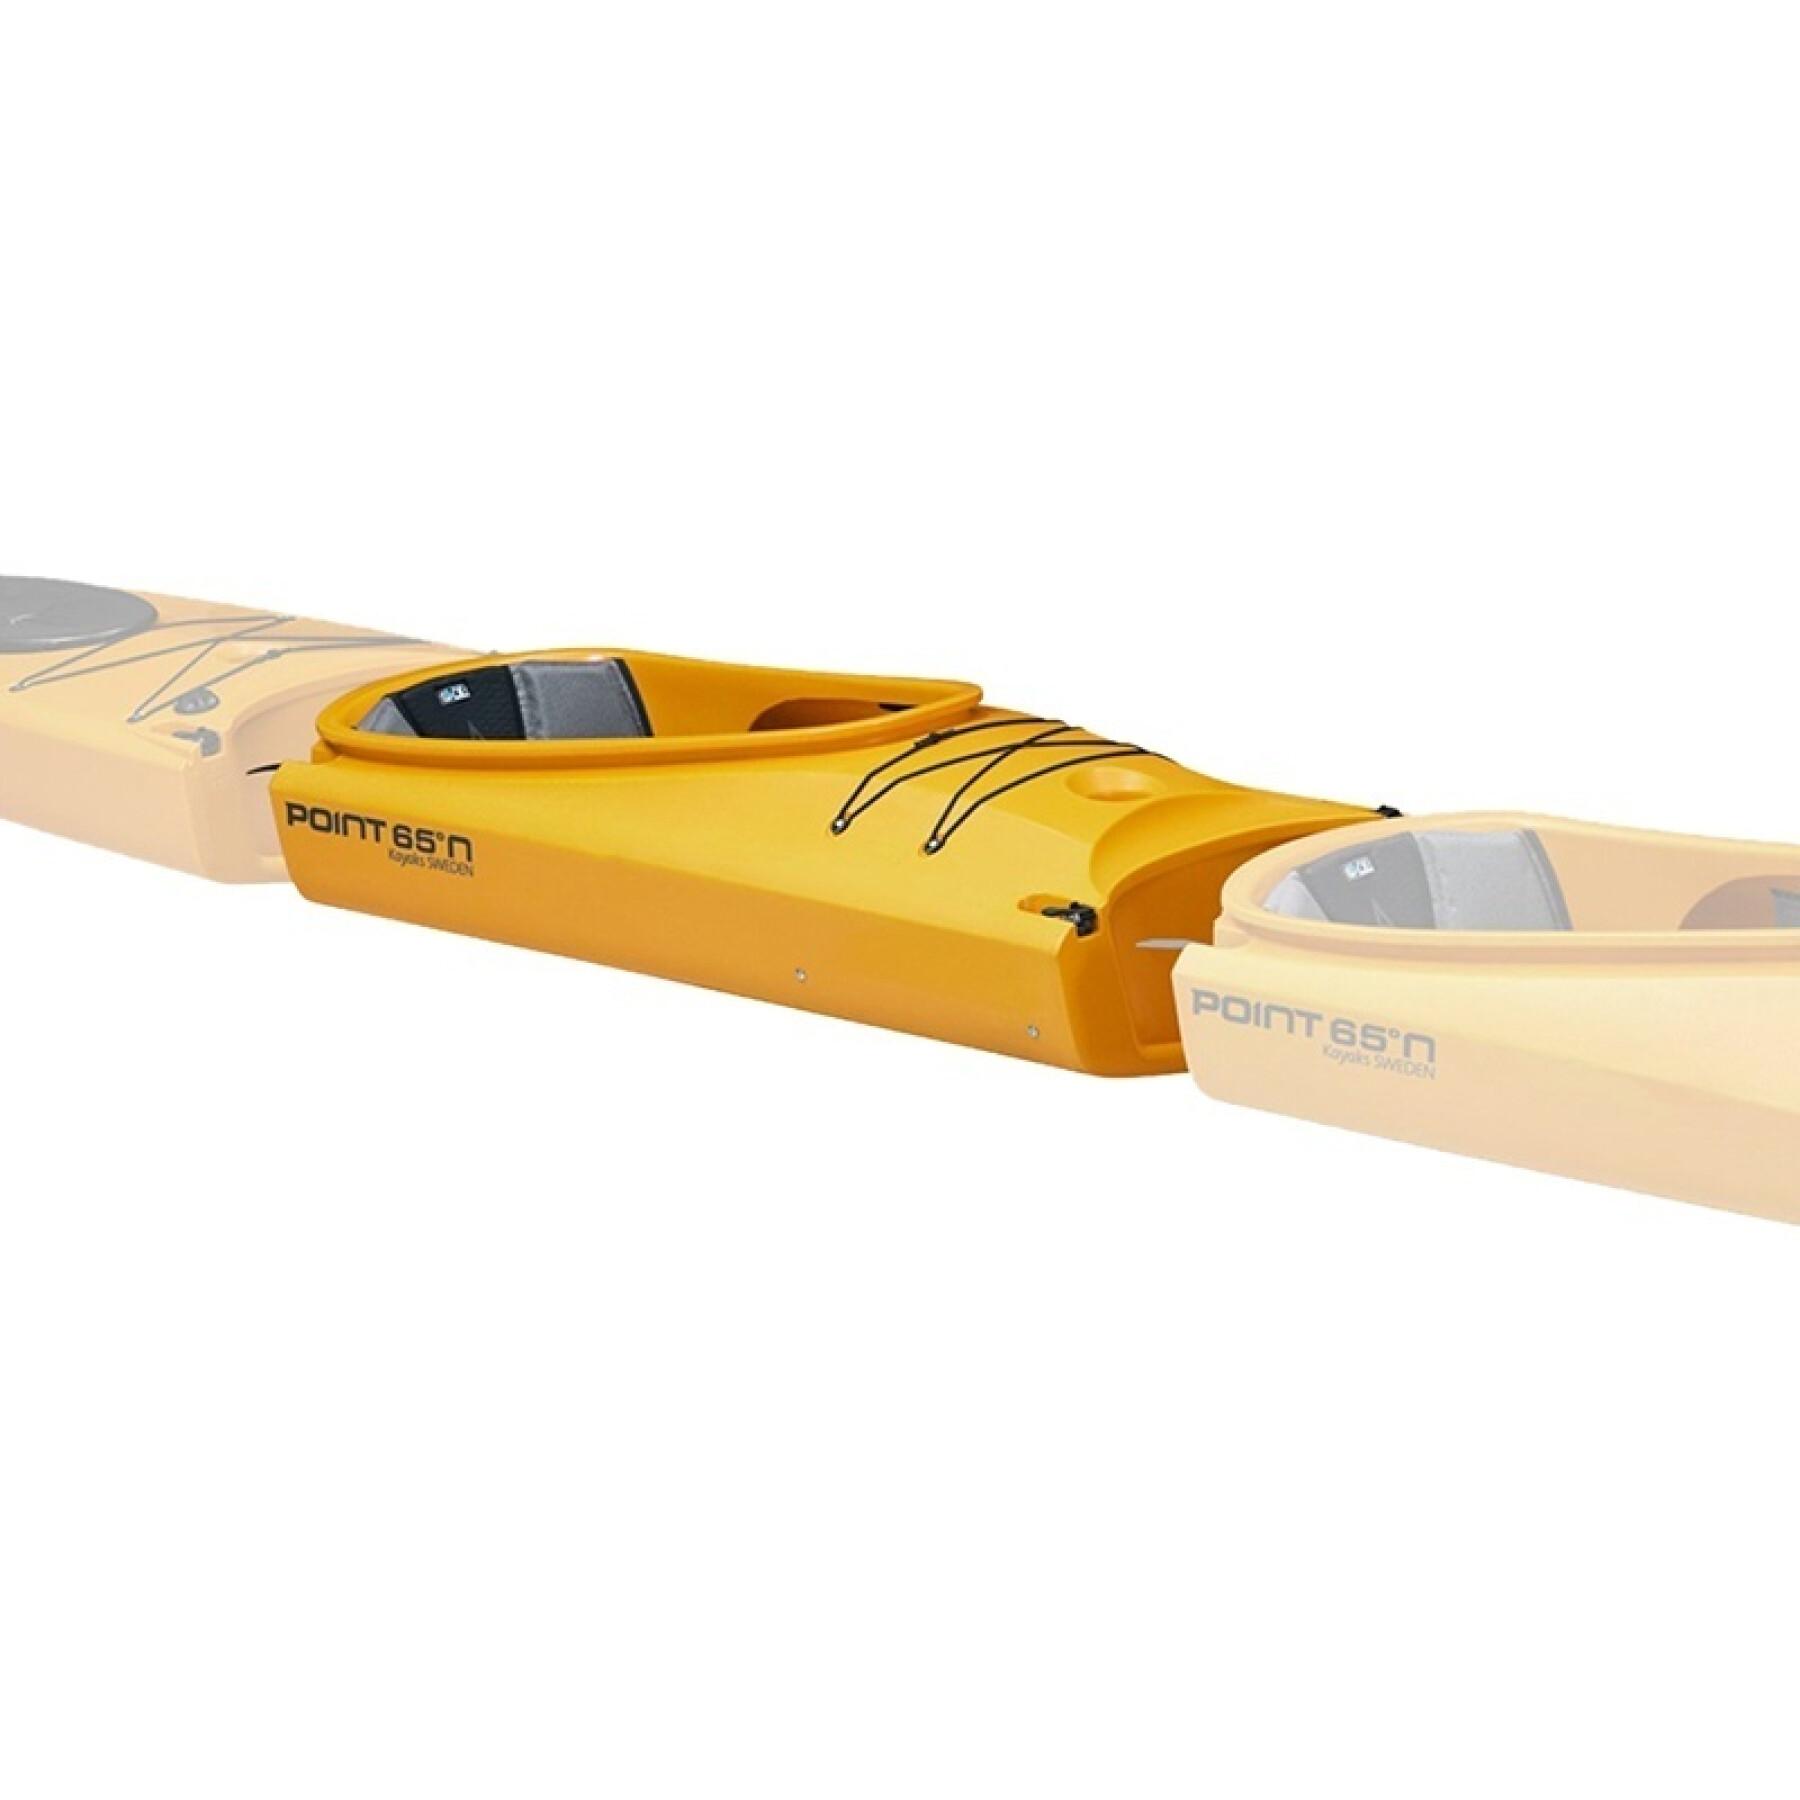 Pieza adicional para el kayak Point 65°N mercury supp